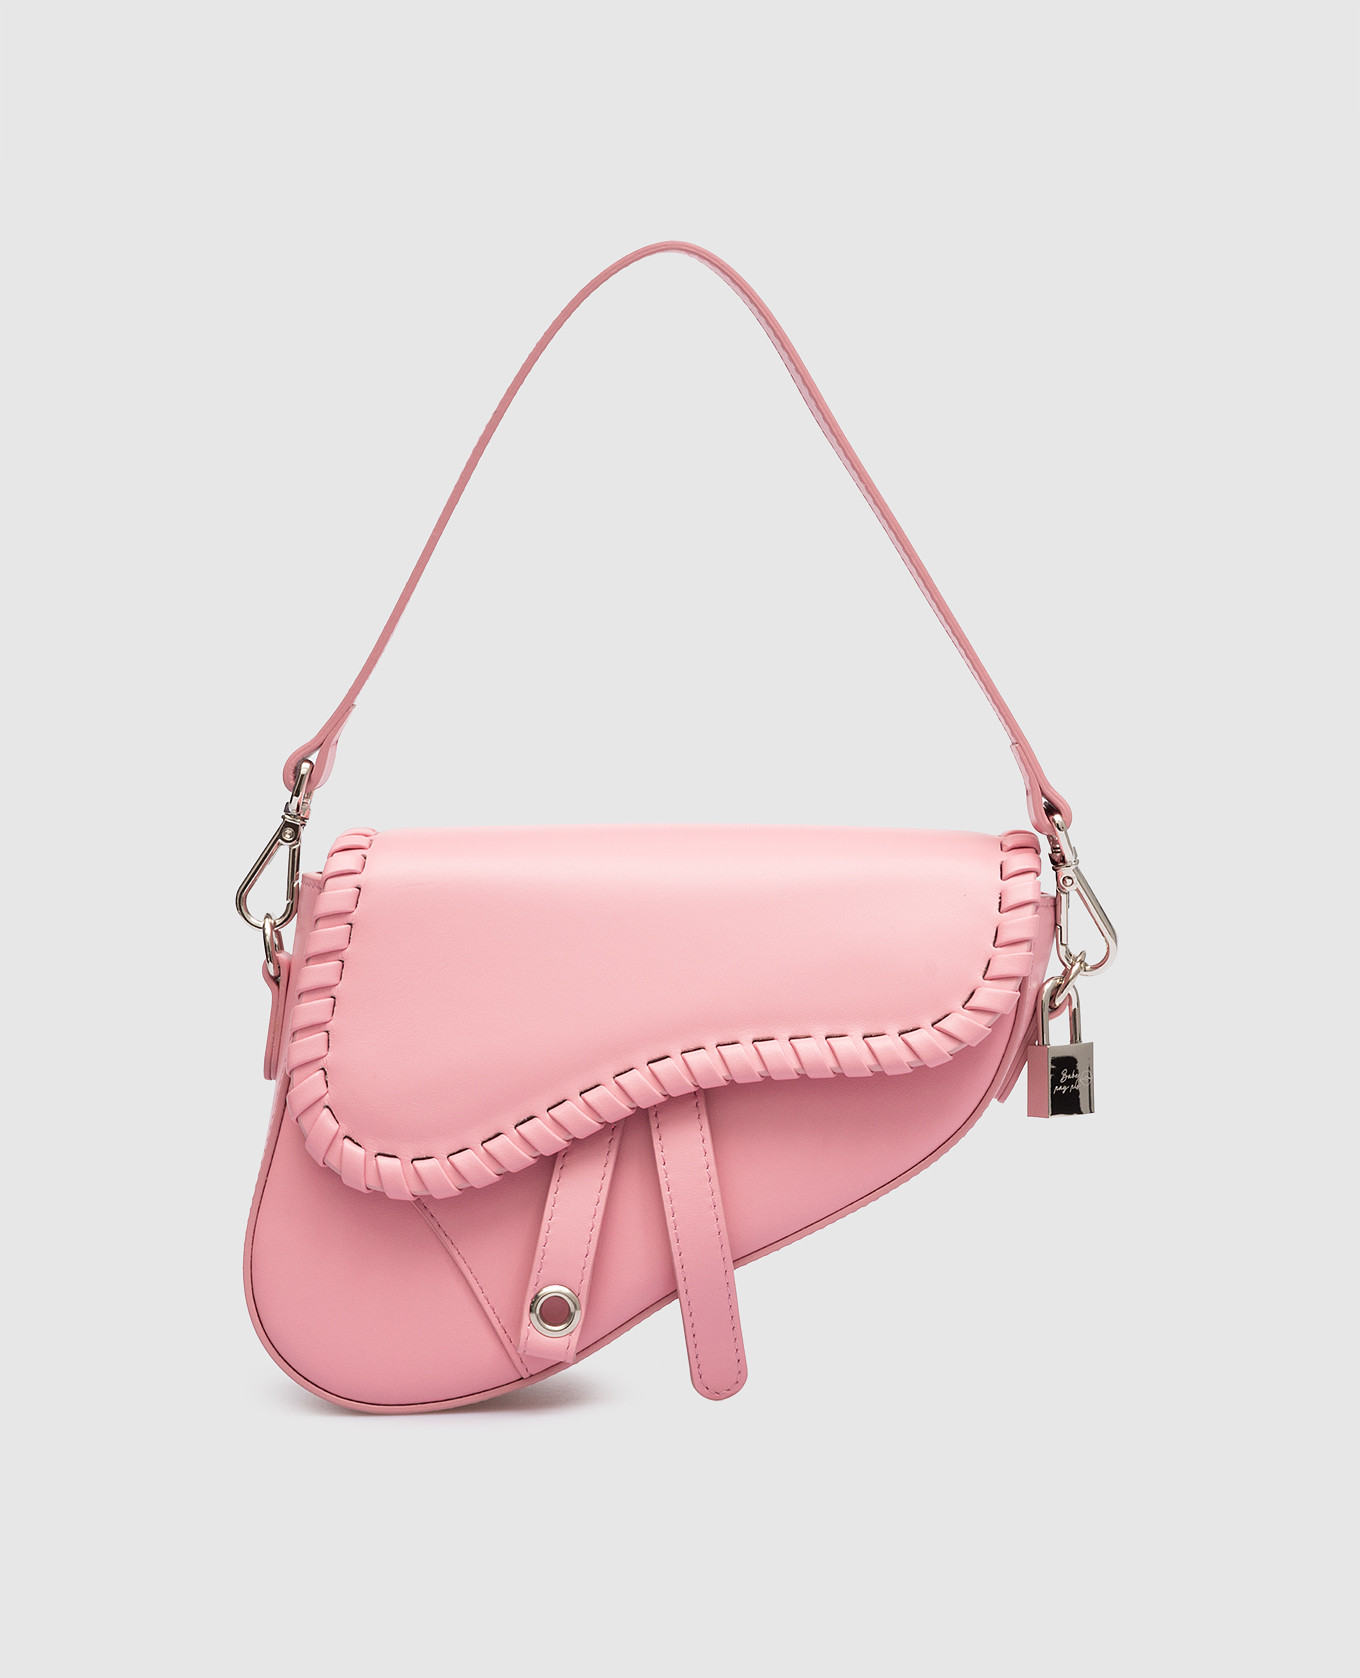 Pink leather saddle bag